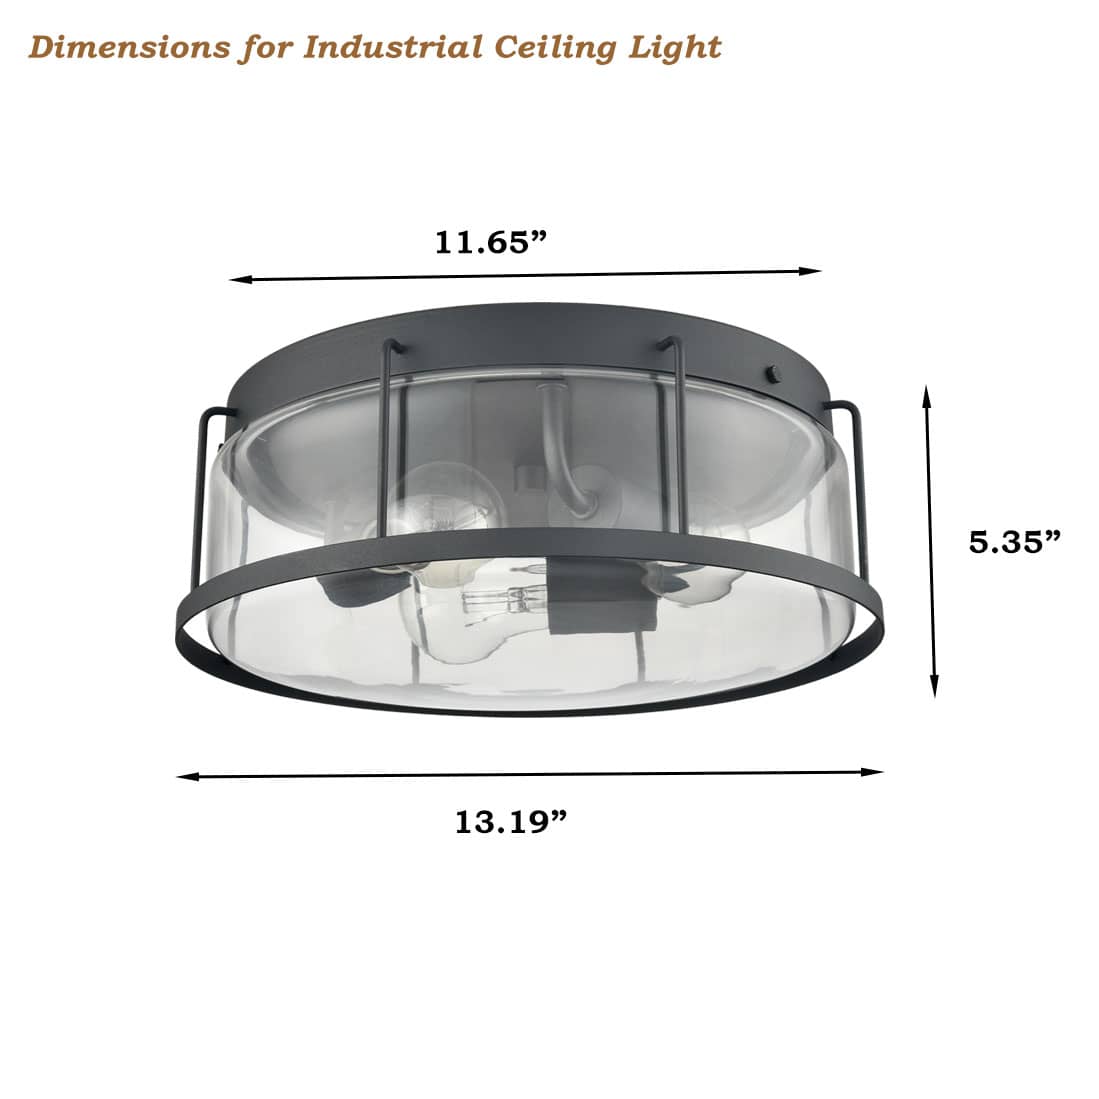 Industrial 3-Light Glass Flush Mount Ceiling Light,Matte Black Finish